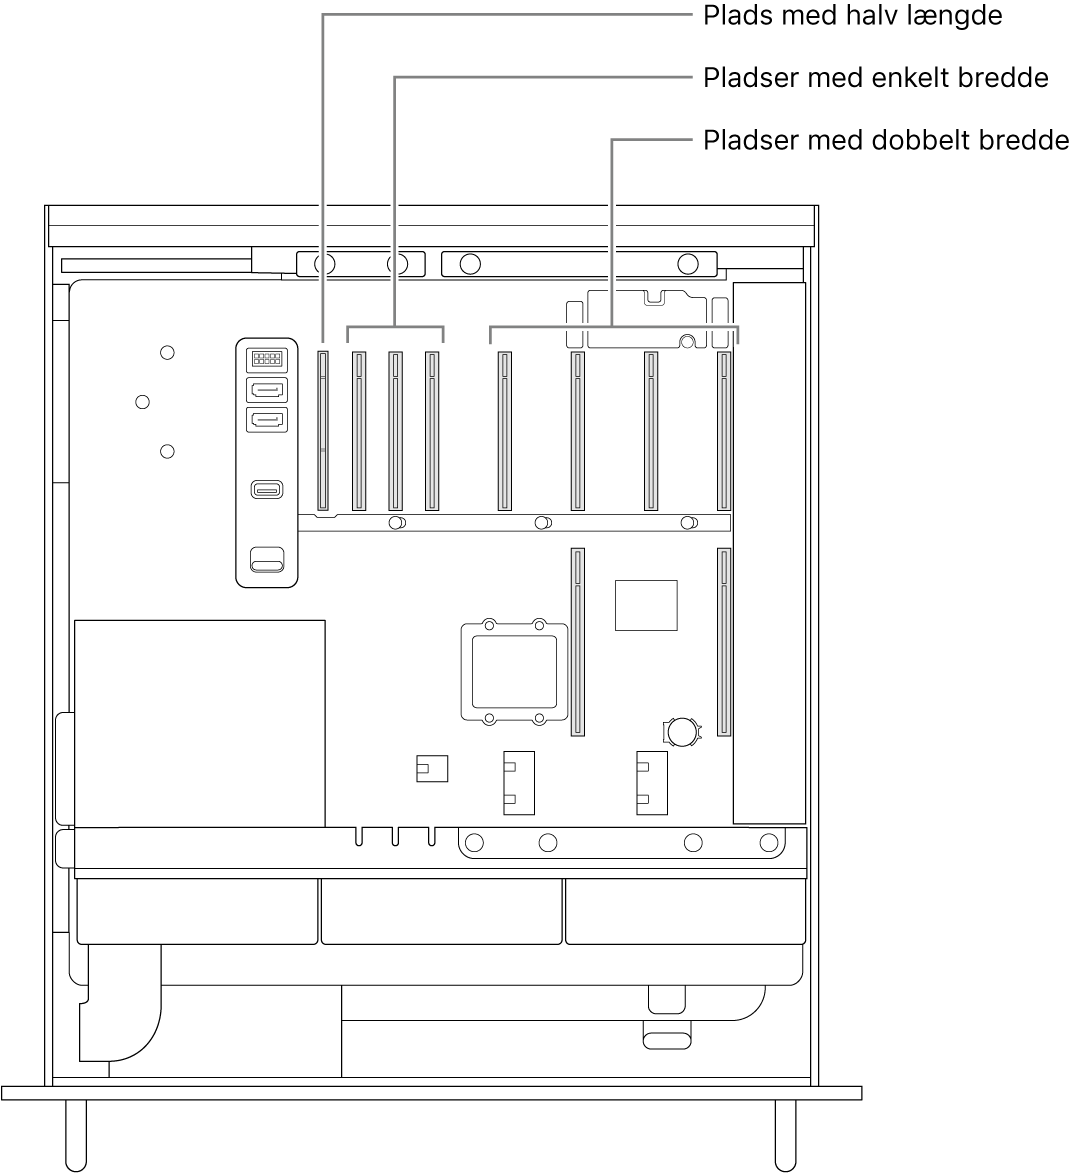 Siden på Mac Pro er åben med billedforklaringer til placeringen af de fire pladser i dobbelt bredde, de tre pladser i enkelt bredde og pladsen i halv længde.